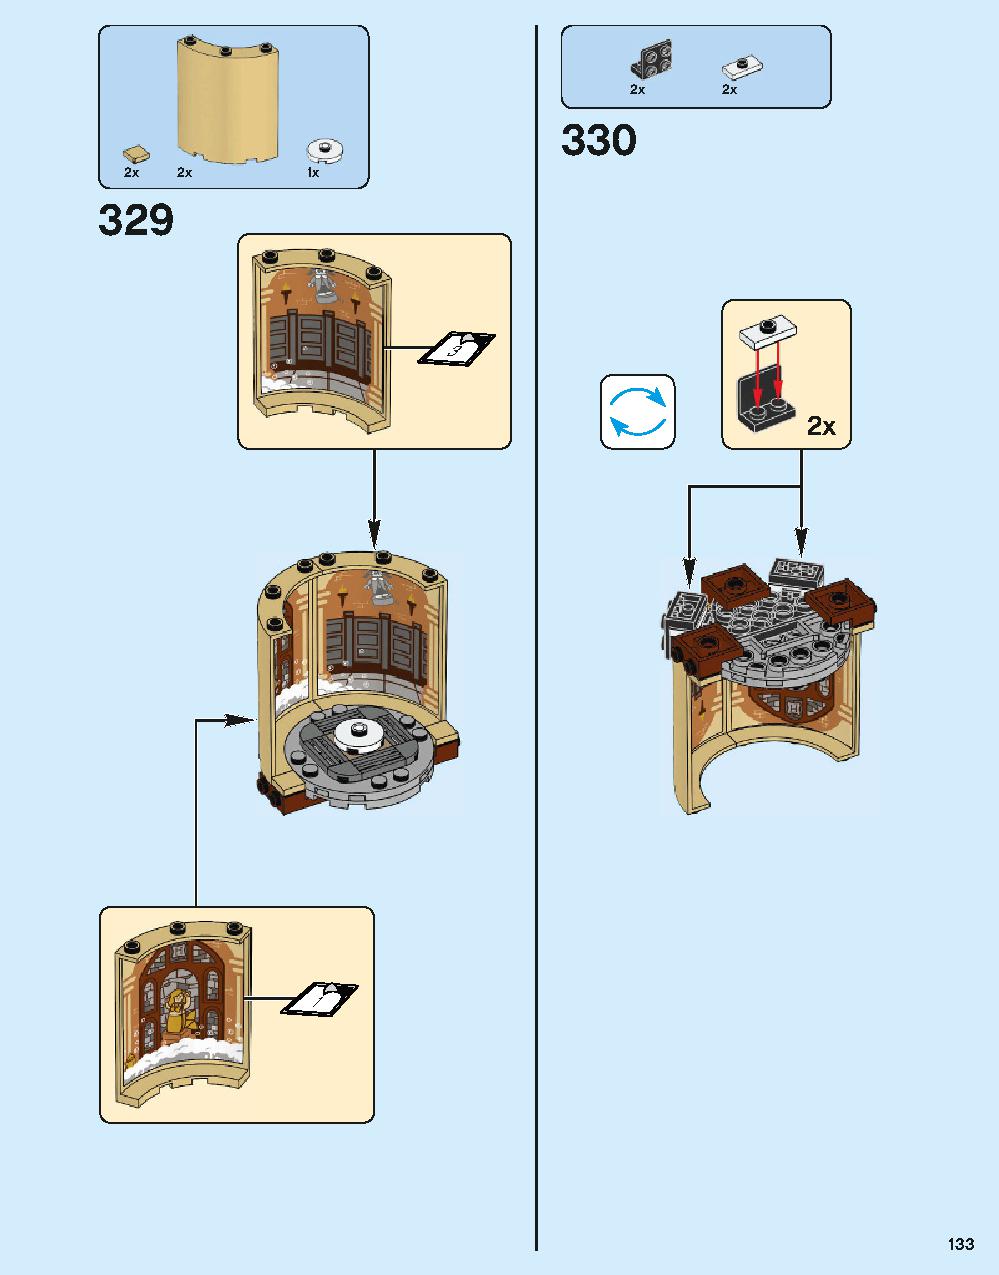 ホグワーツ城 71043 レゴの商品情報 レゴの説明書・組立方法 133 page